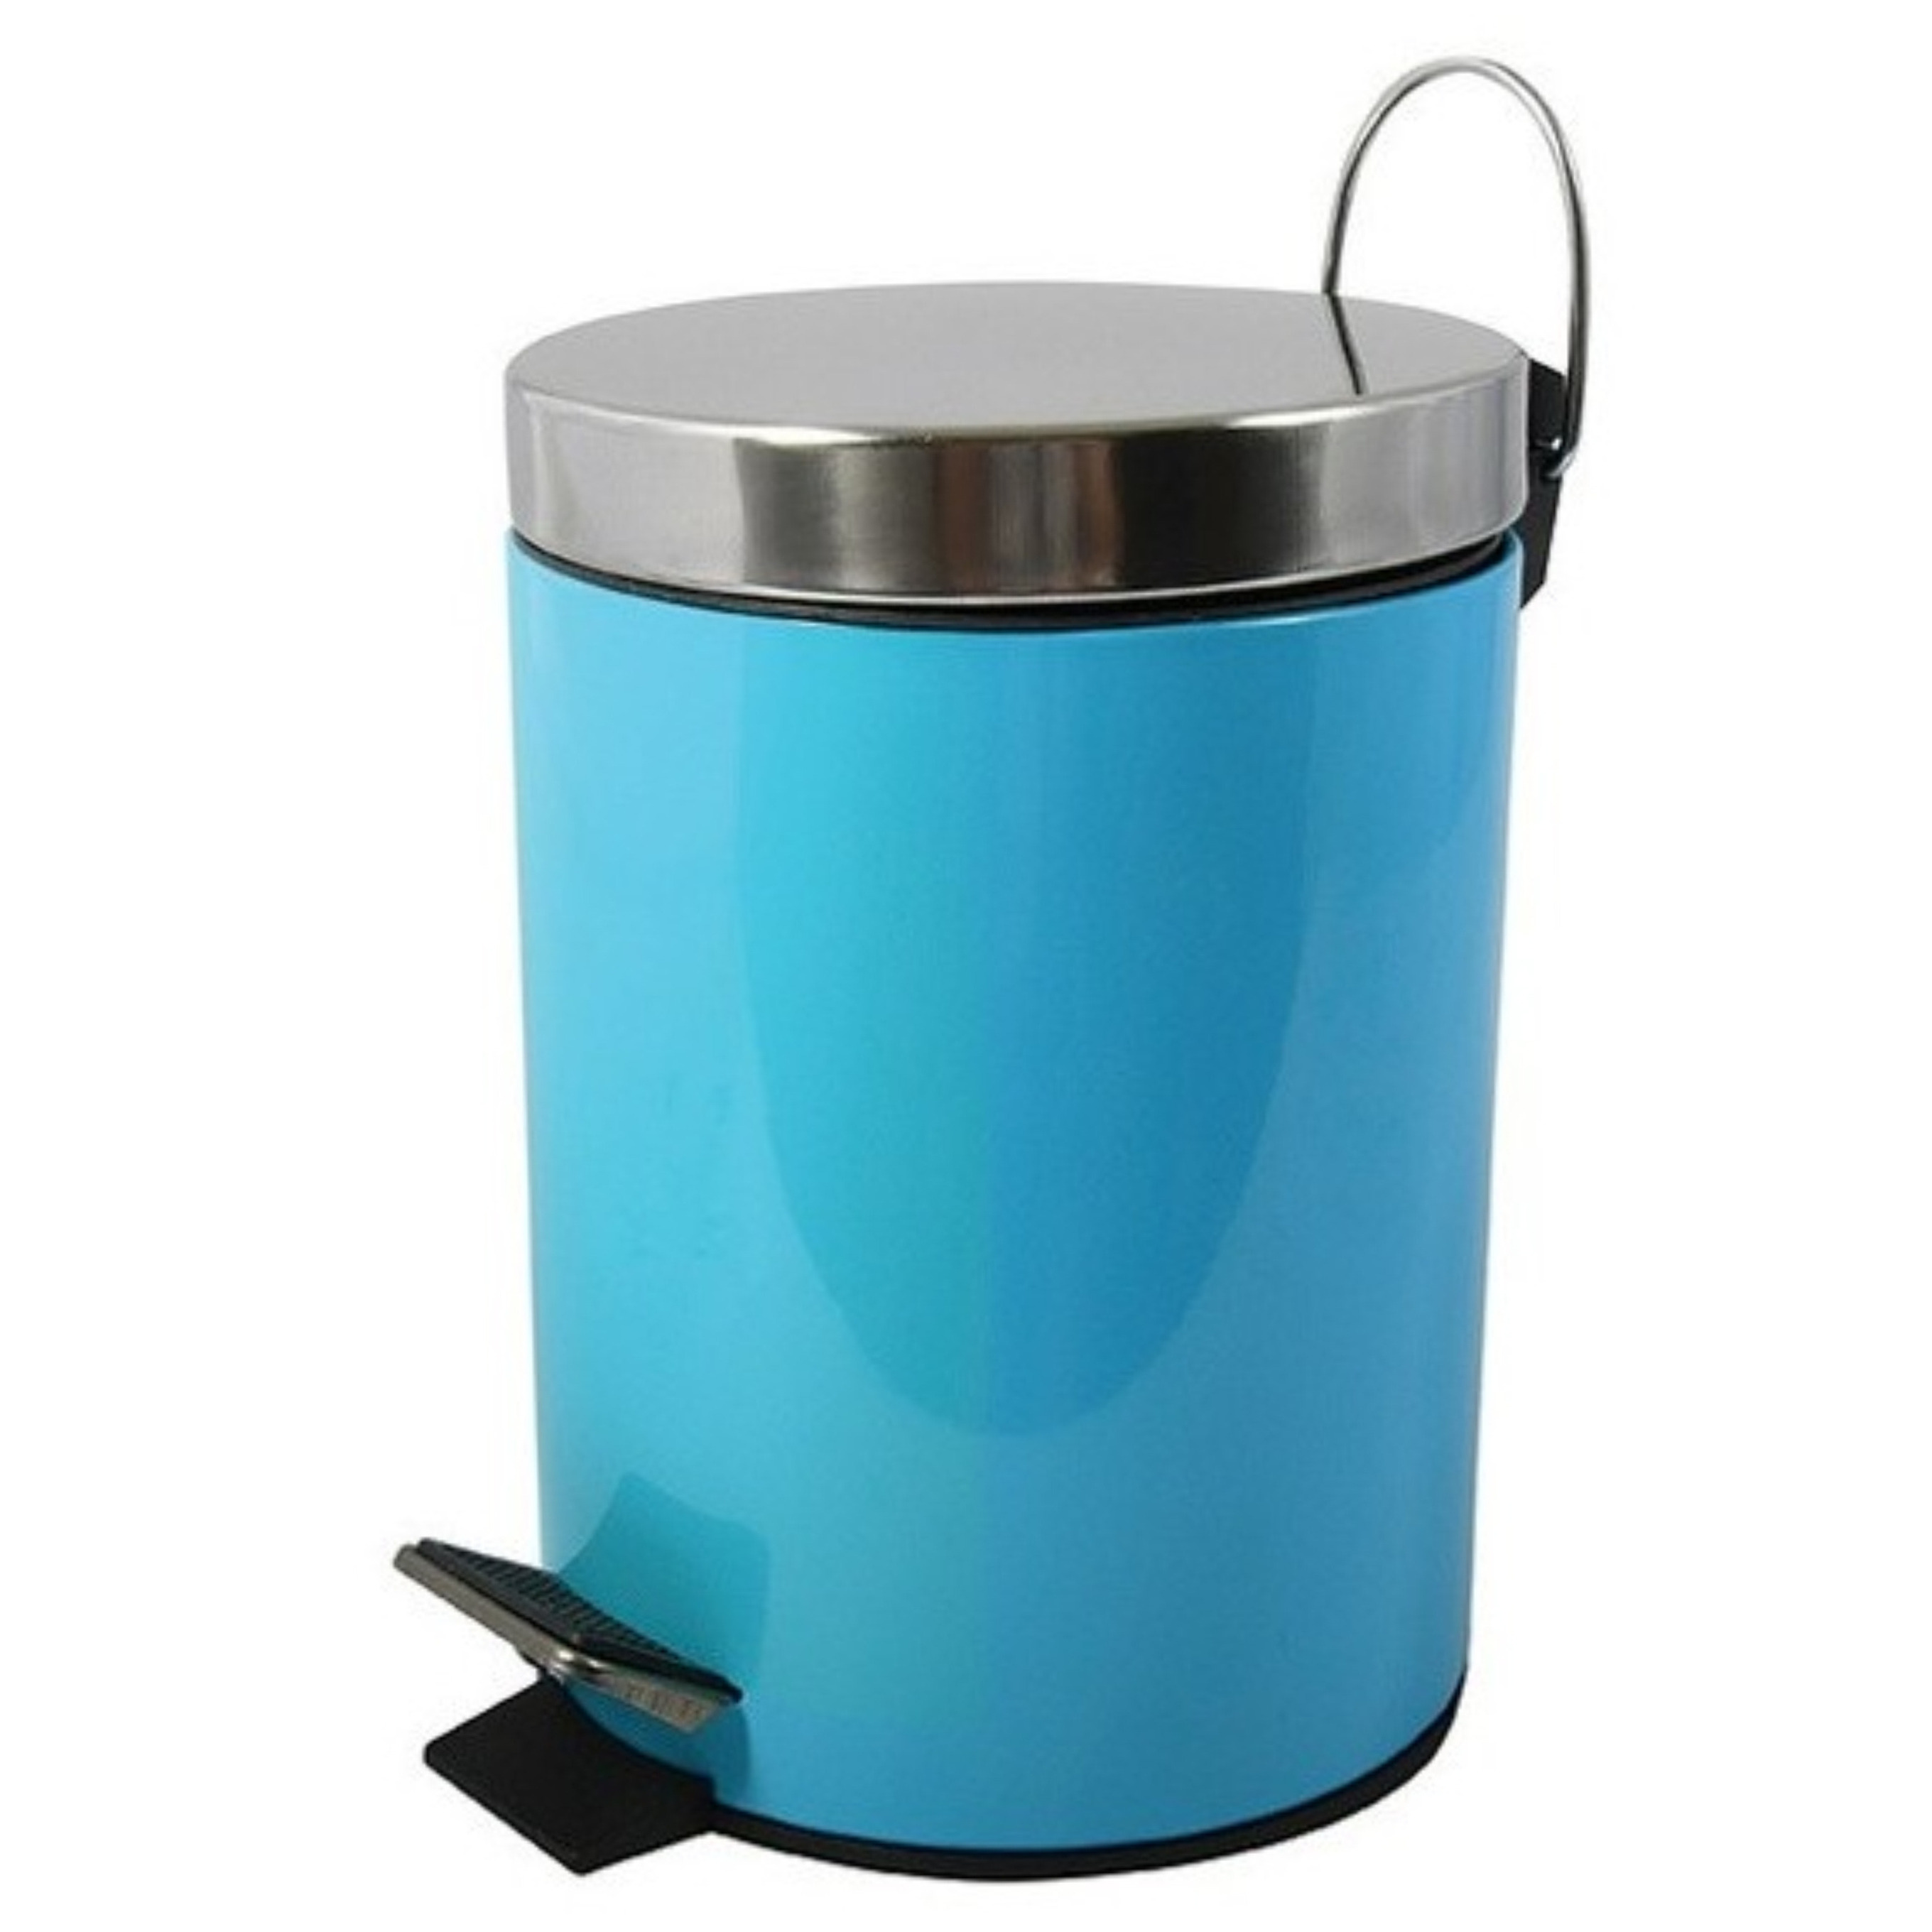 Prullenbak-pedaalemmer metaal turquoise blauw 3 liter 17 x 25 cm Badkamer-toilet